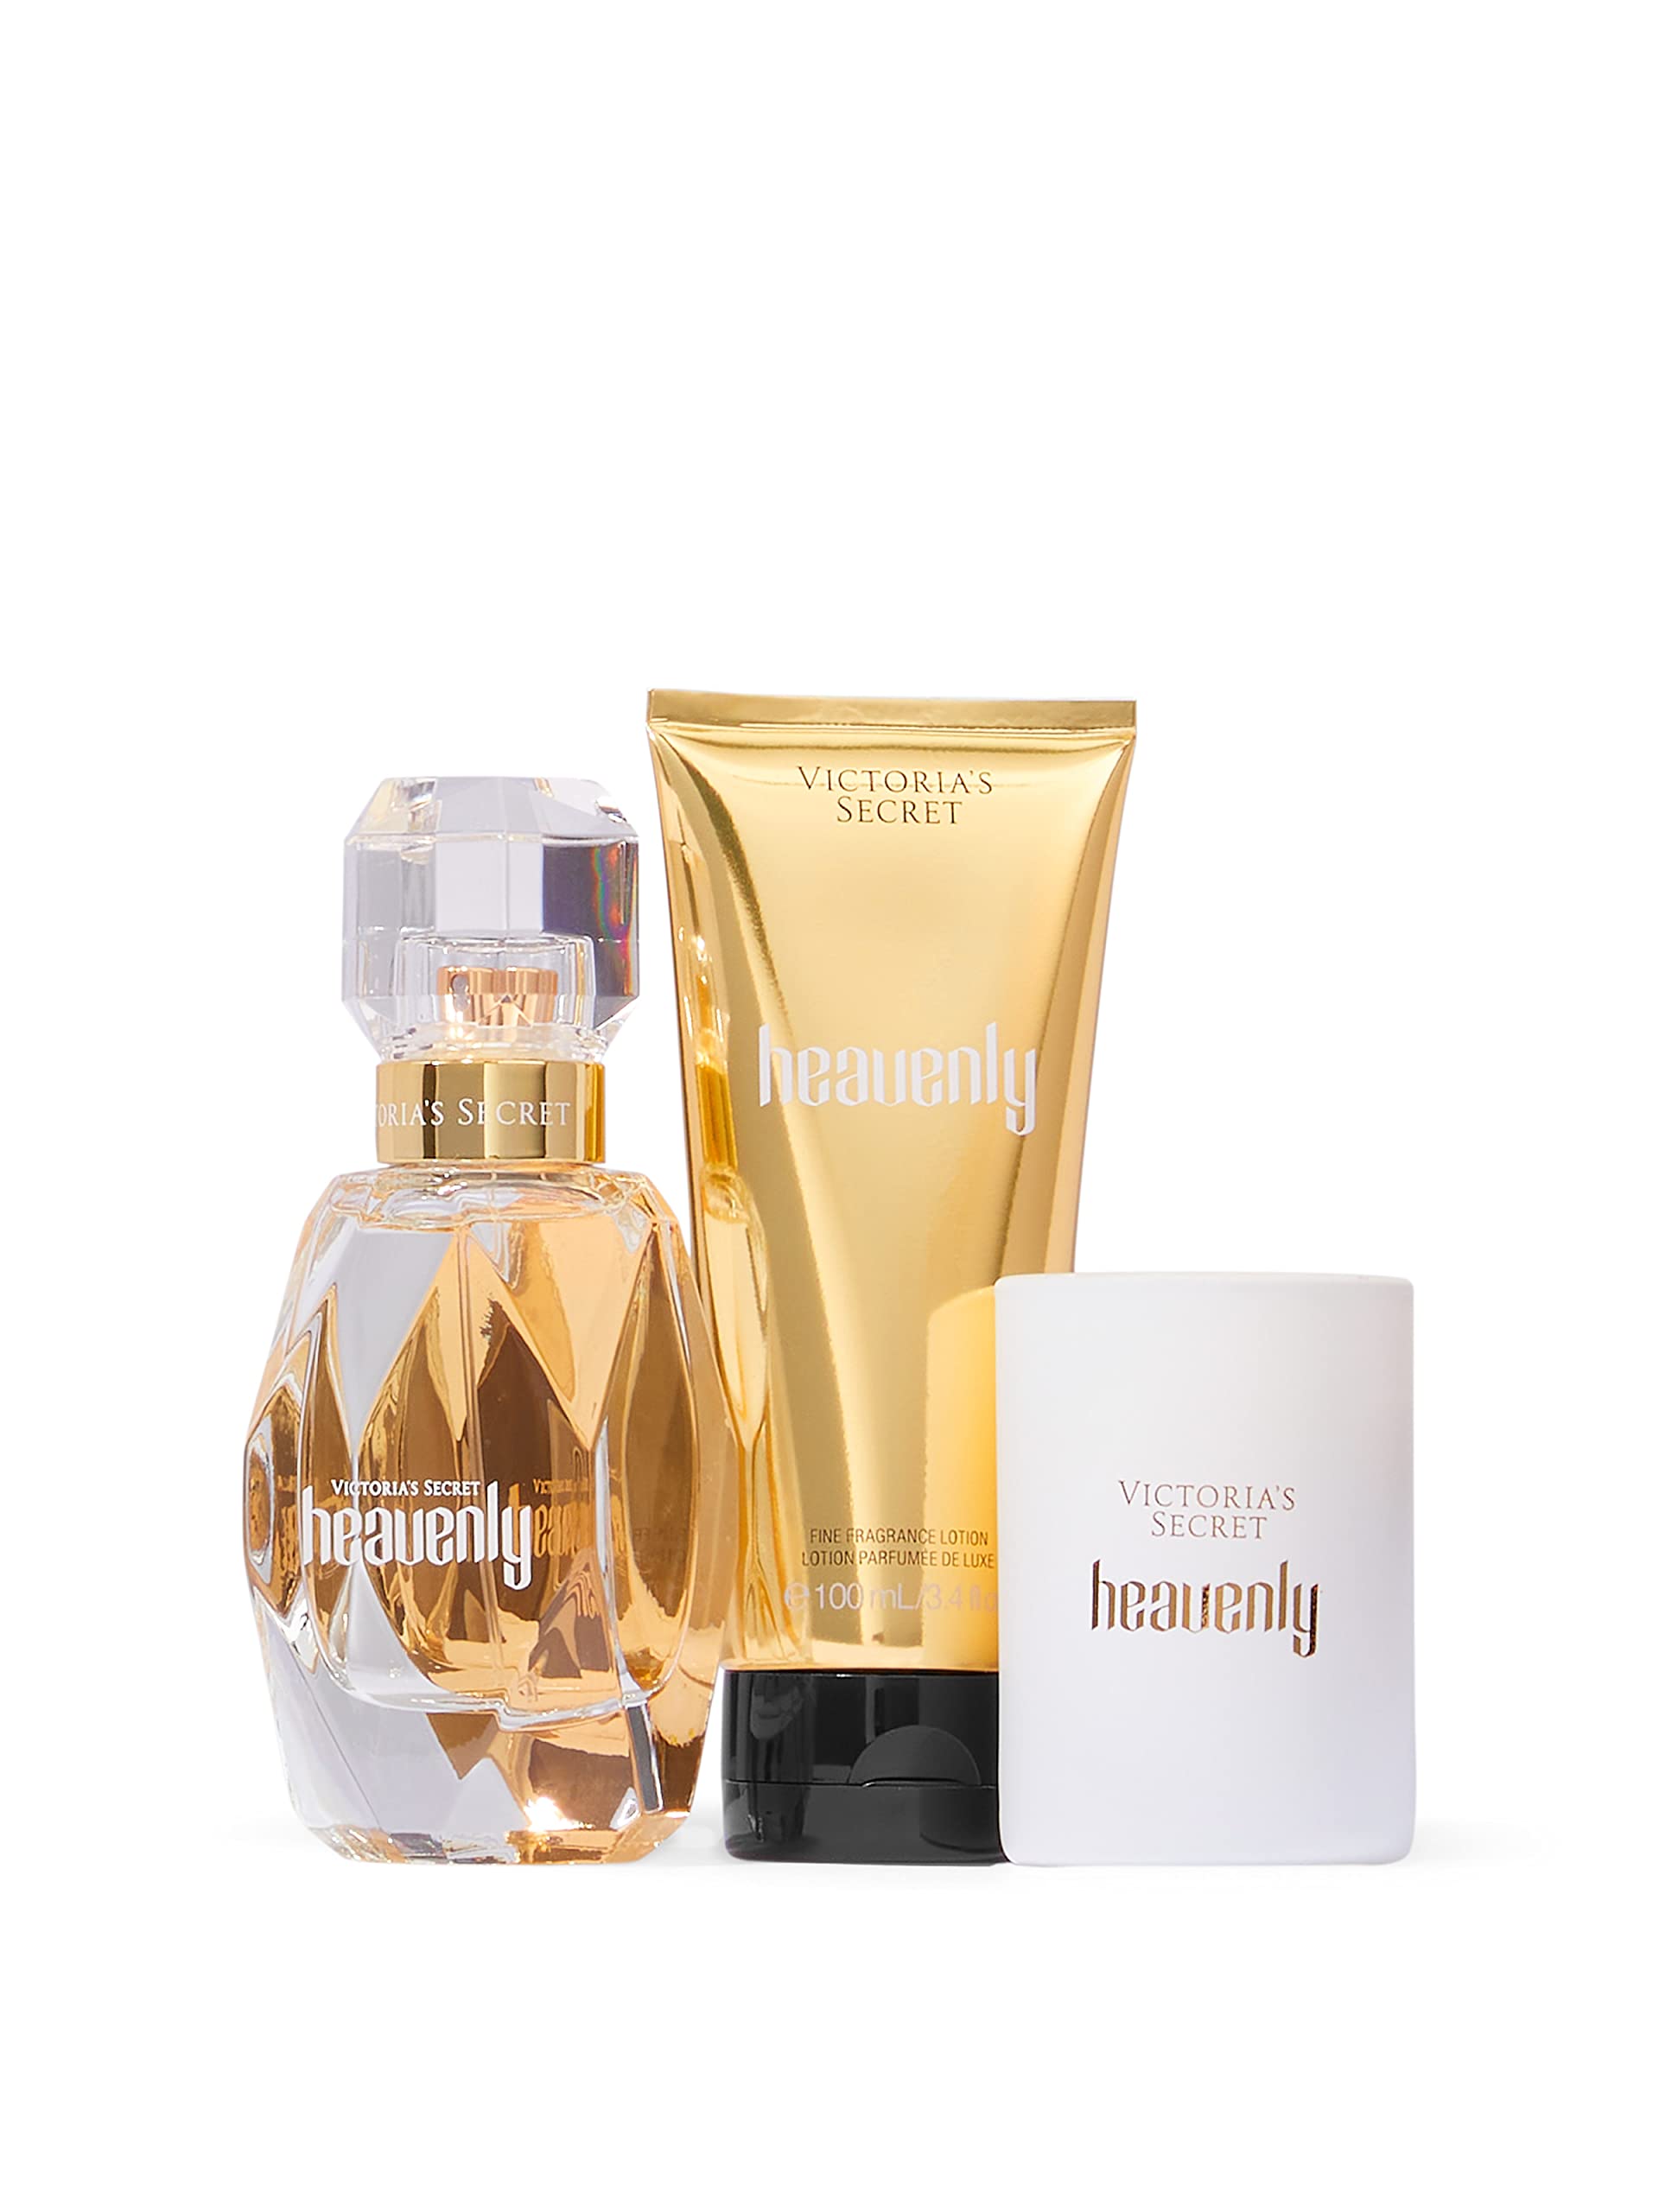 Victoria's Secret Heavenly 3 Piece Luxe Fragrance Gift Set: 1.7 oz. Eau de Parfum, Travel Lotion, & Candle